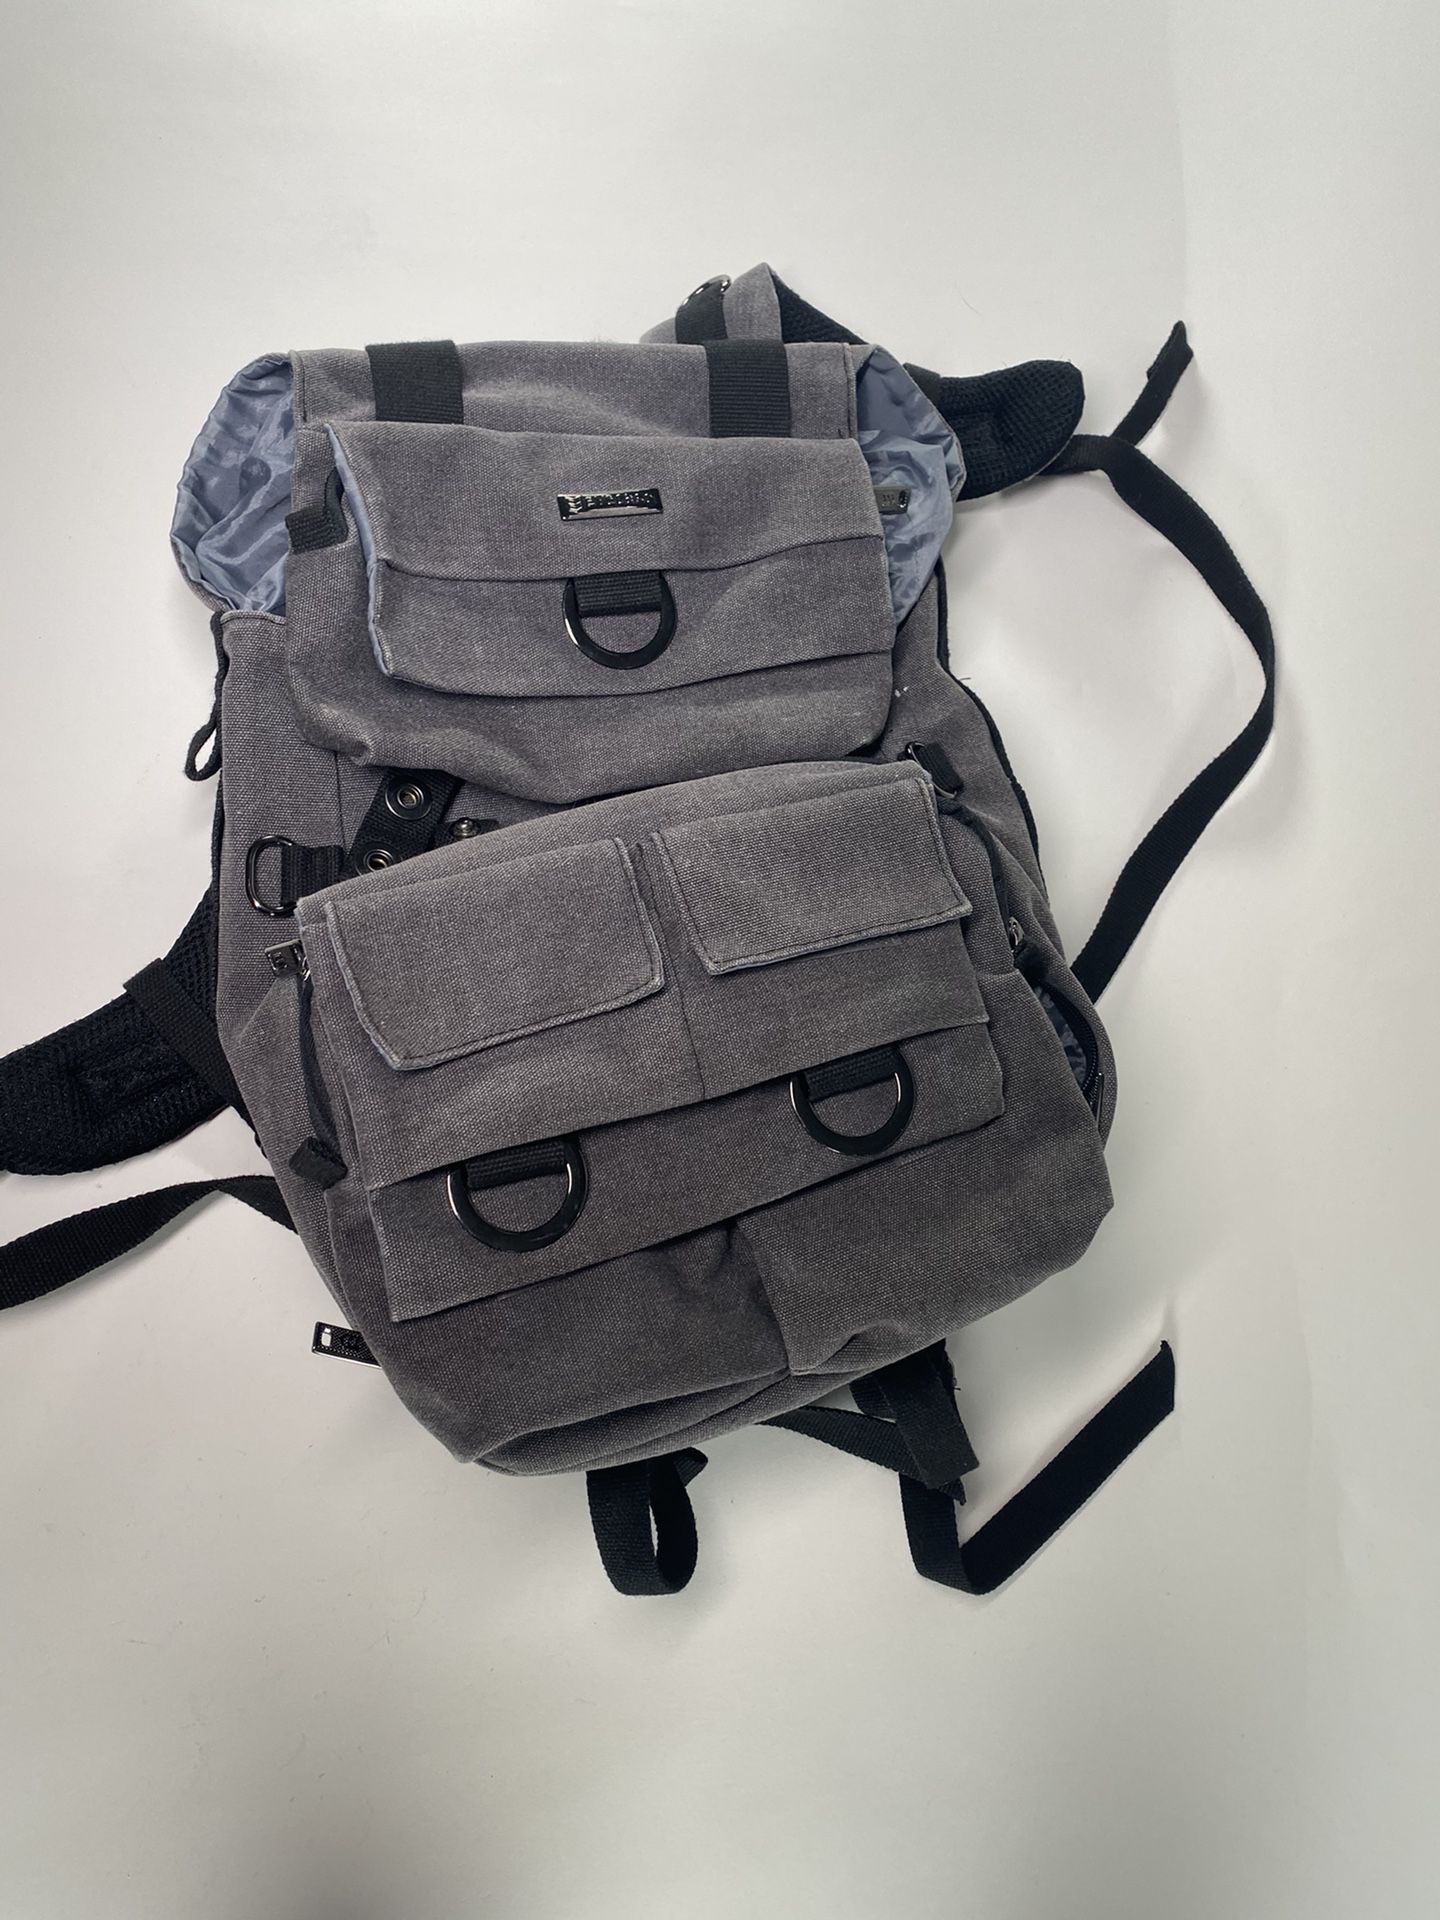 Backpack for dslr Camara